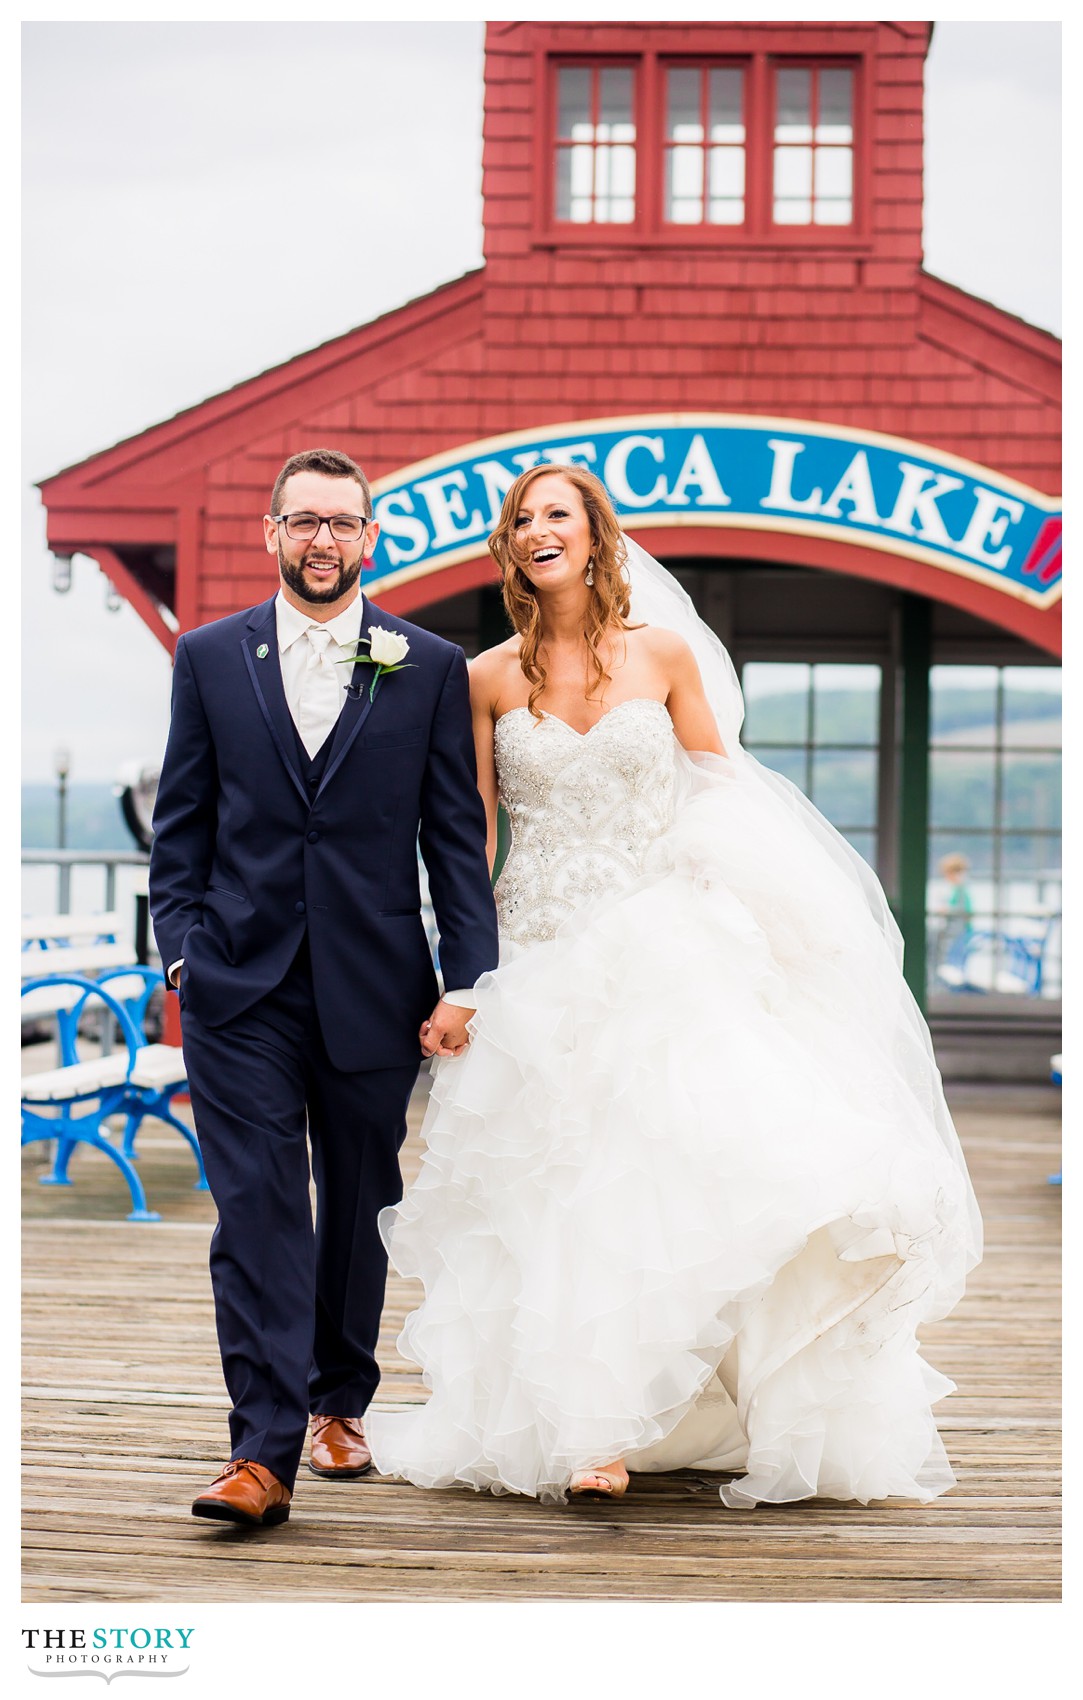 Watkins Glen wedding photography on Seneca Lake